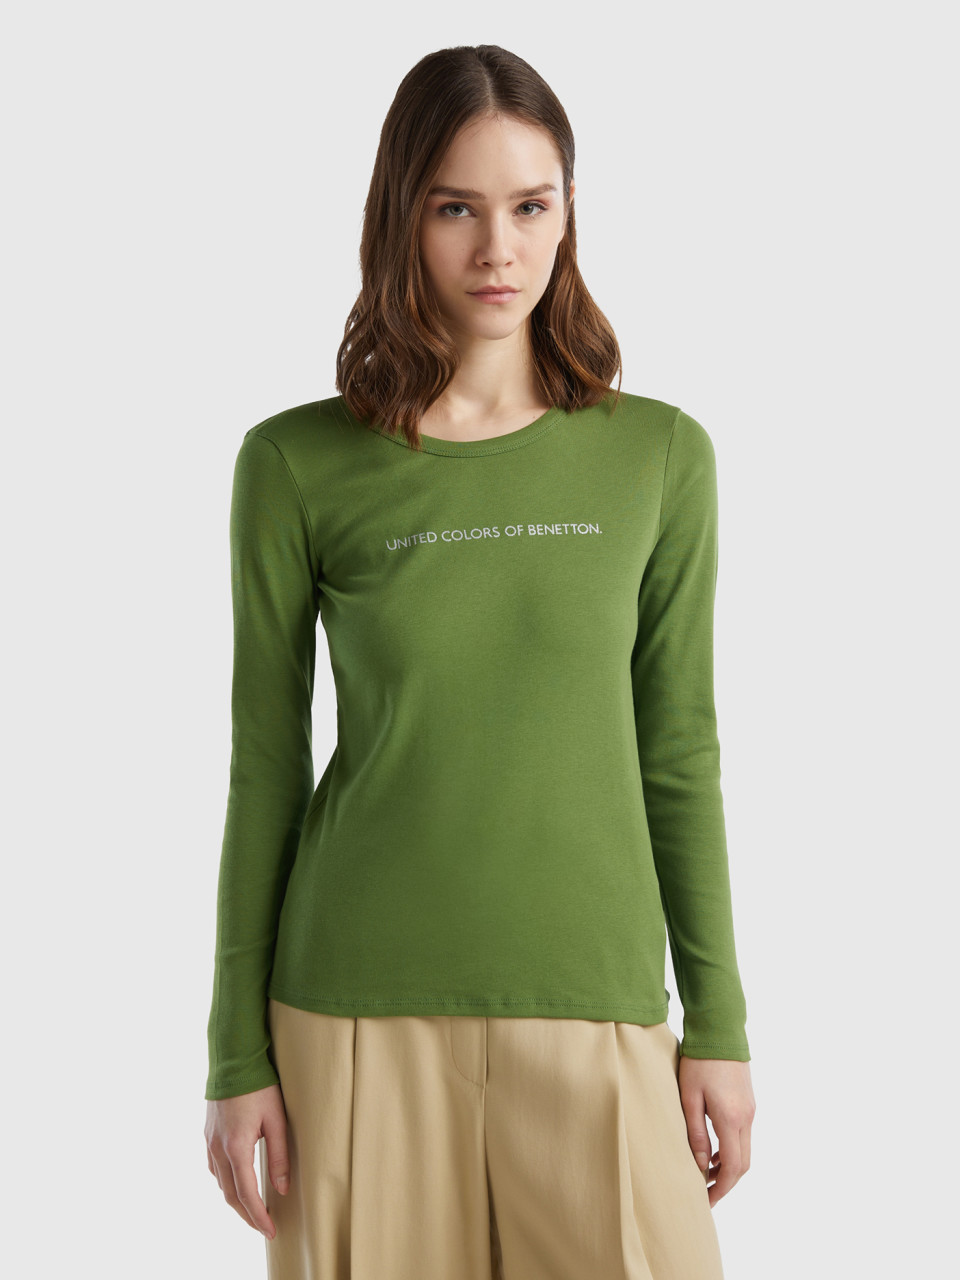 Benetton, T-shirt A Manica Lunga 100% Cotone Verde Militare, Verde Militare, Donna